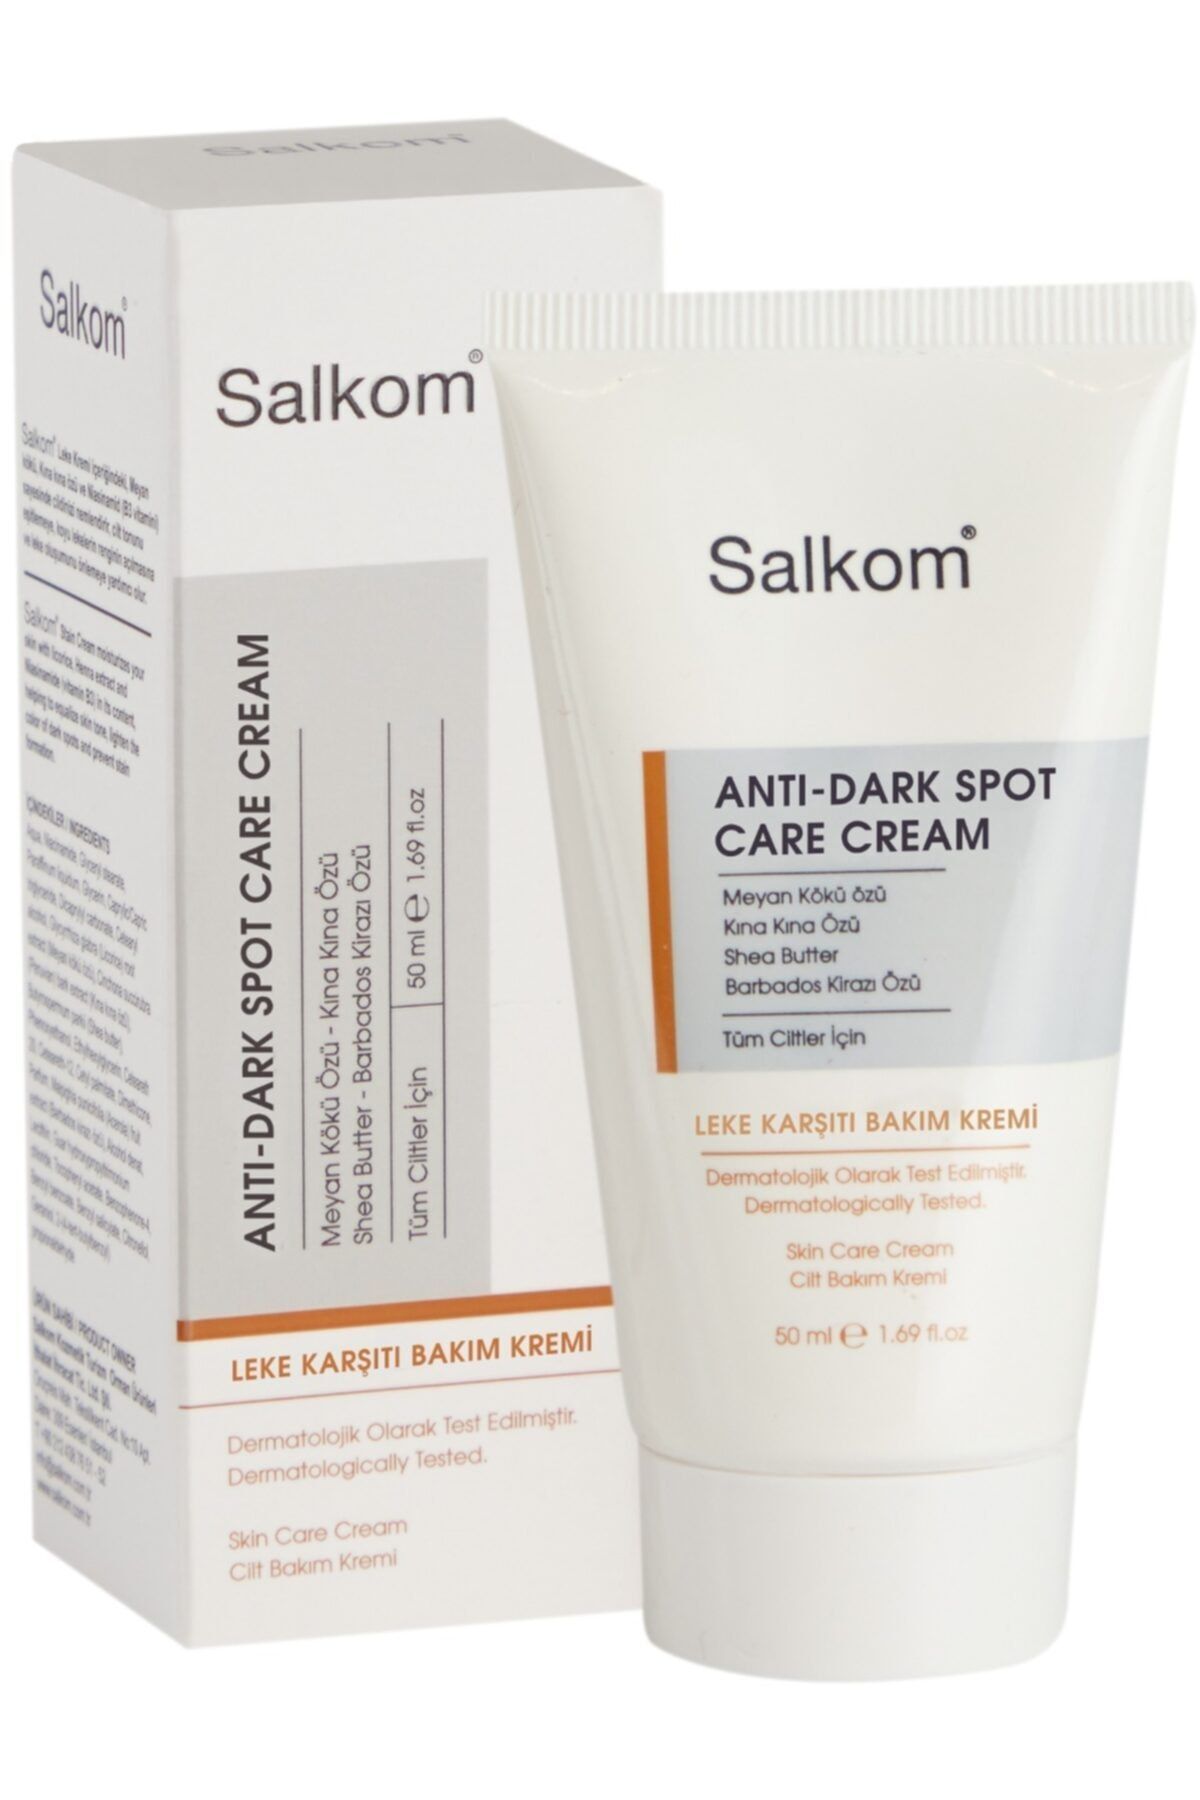 Salkom Antı-dark Spot Care Cream - Leke Karşıtı Bakım Kremi